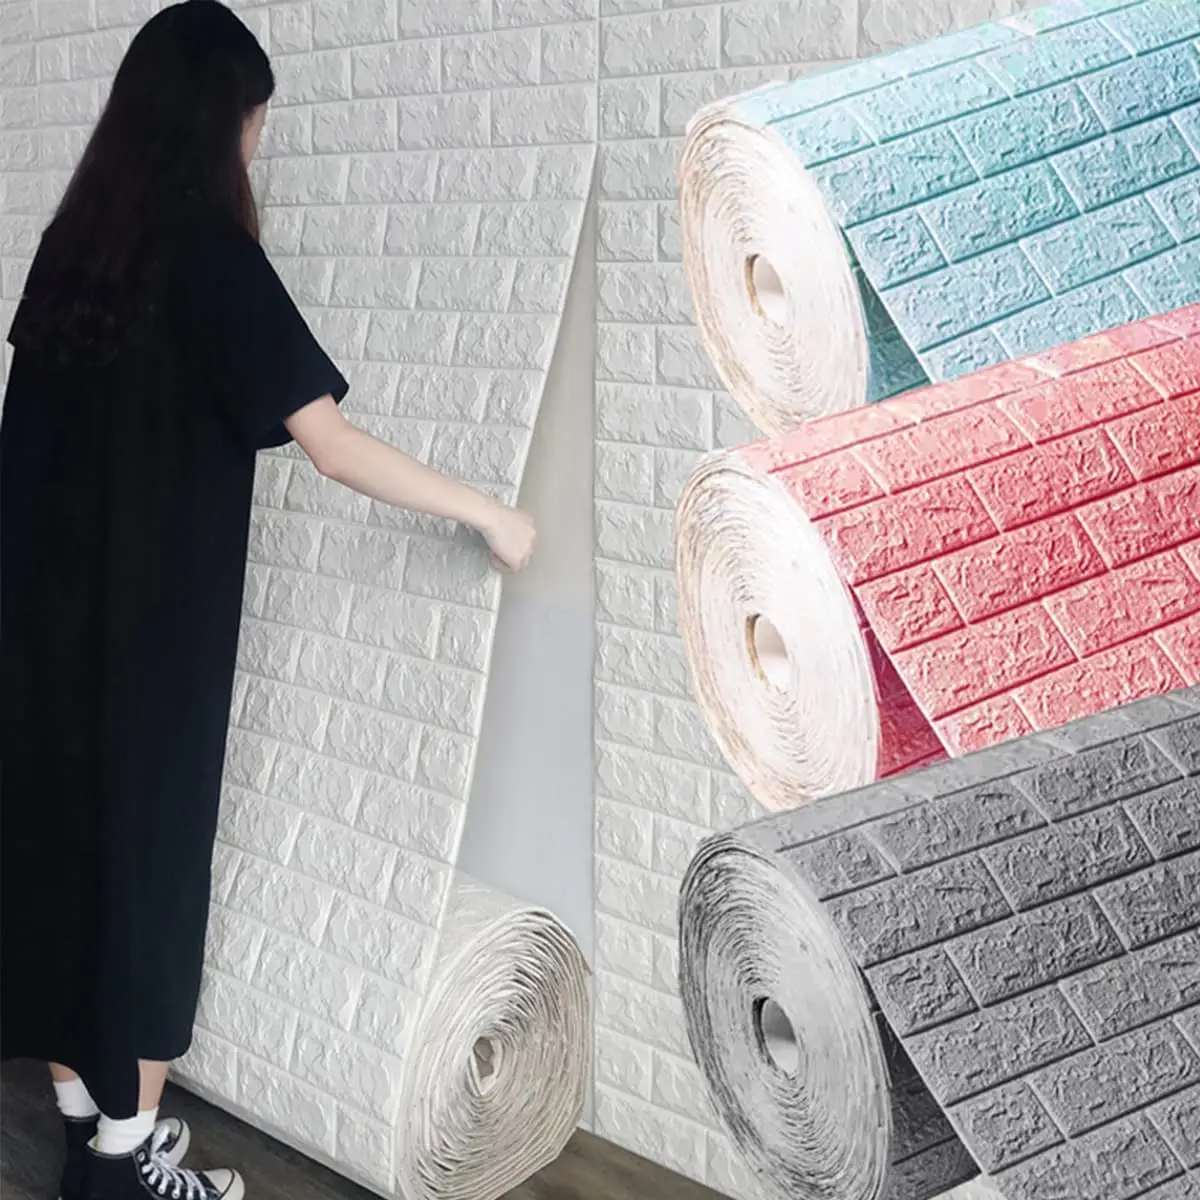 Papel de parede adesivo 3d, papel de parede/revestimento de parede, painéis vinilico autoadesivo, tapiz para parede